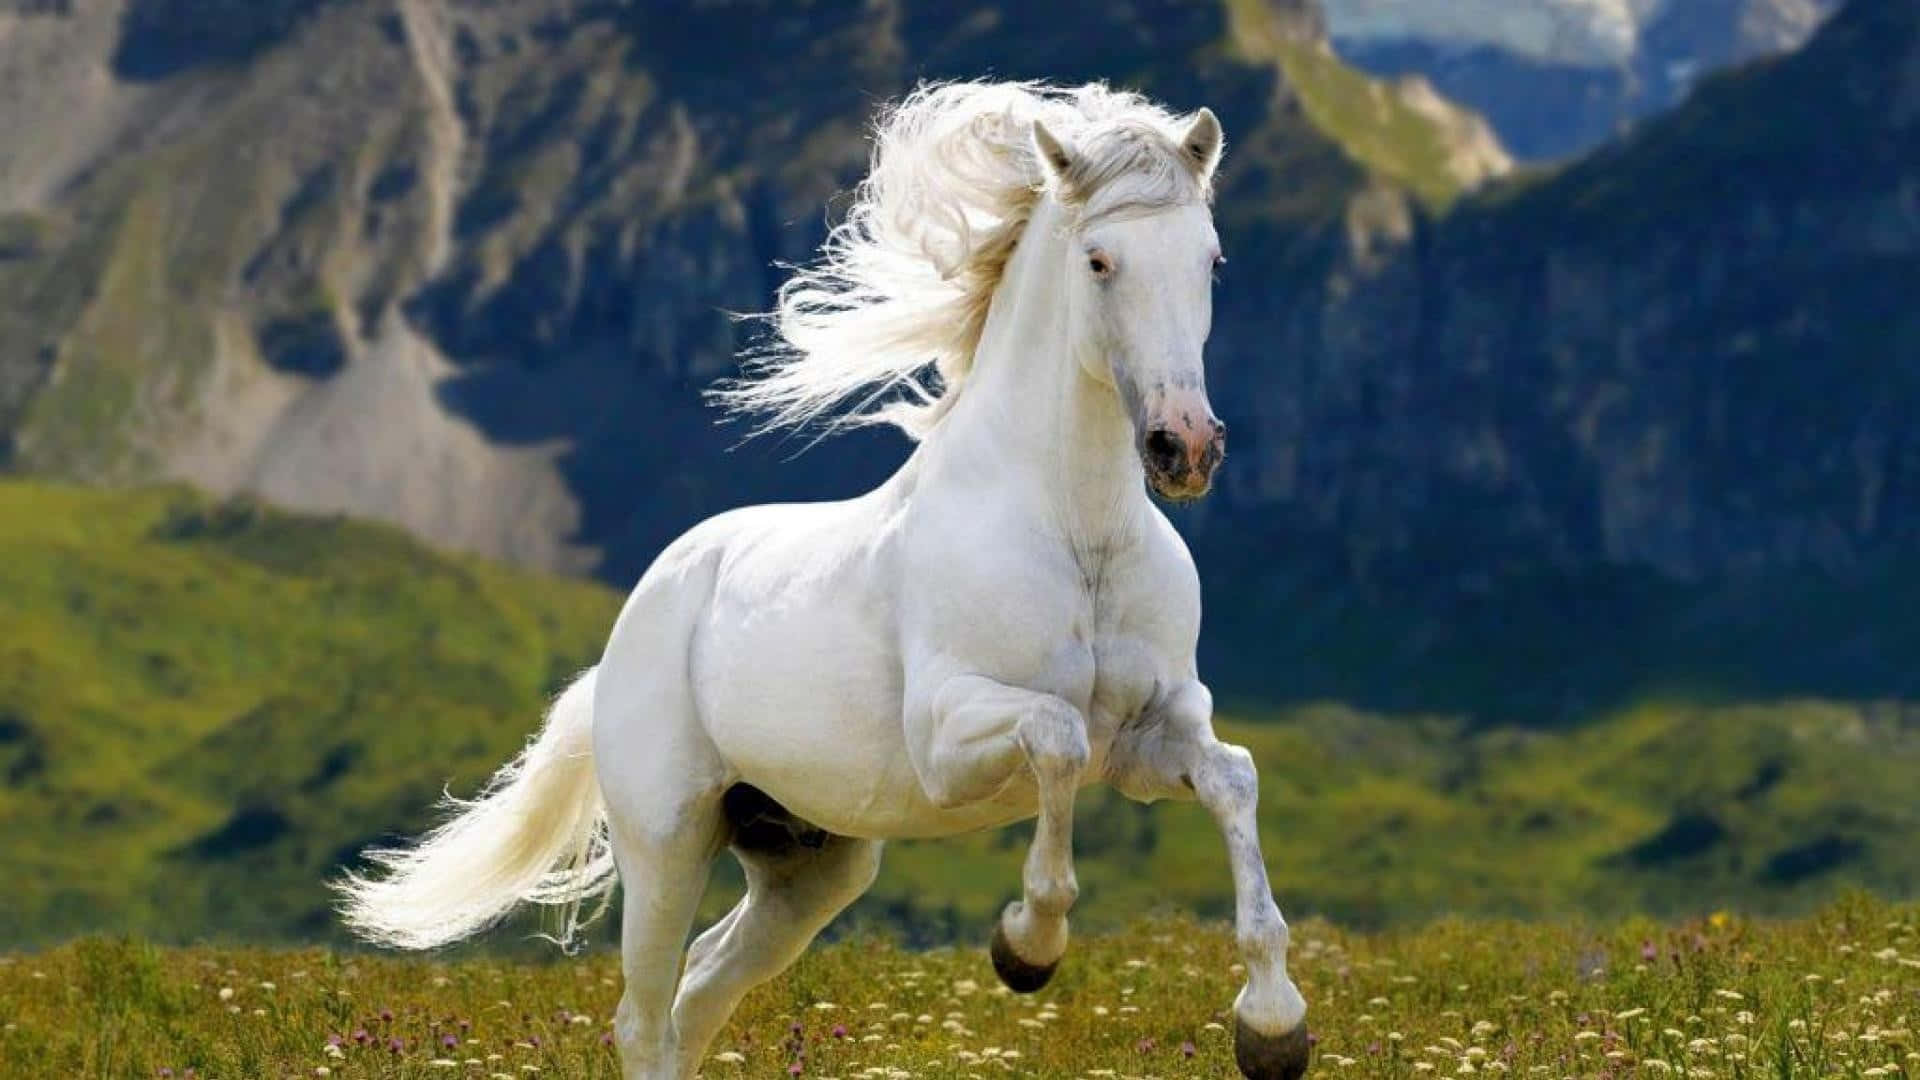 A majestic horse running through a field of green grass